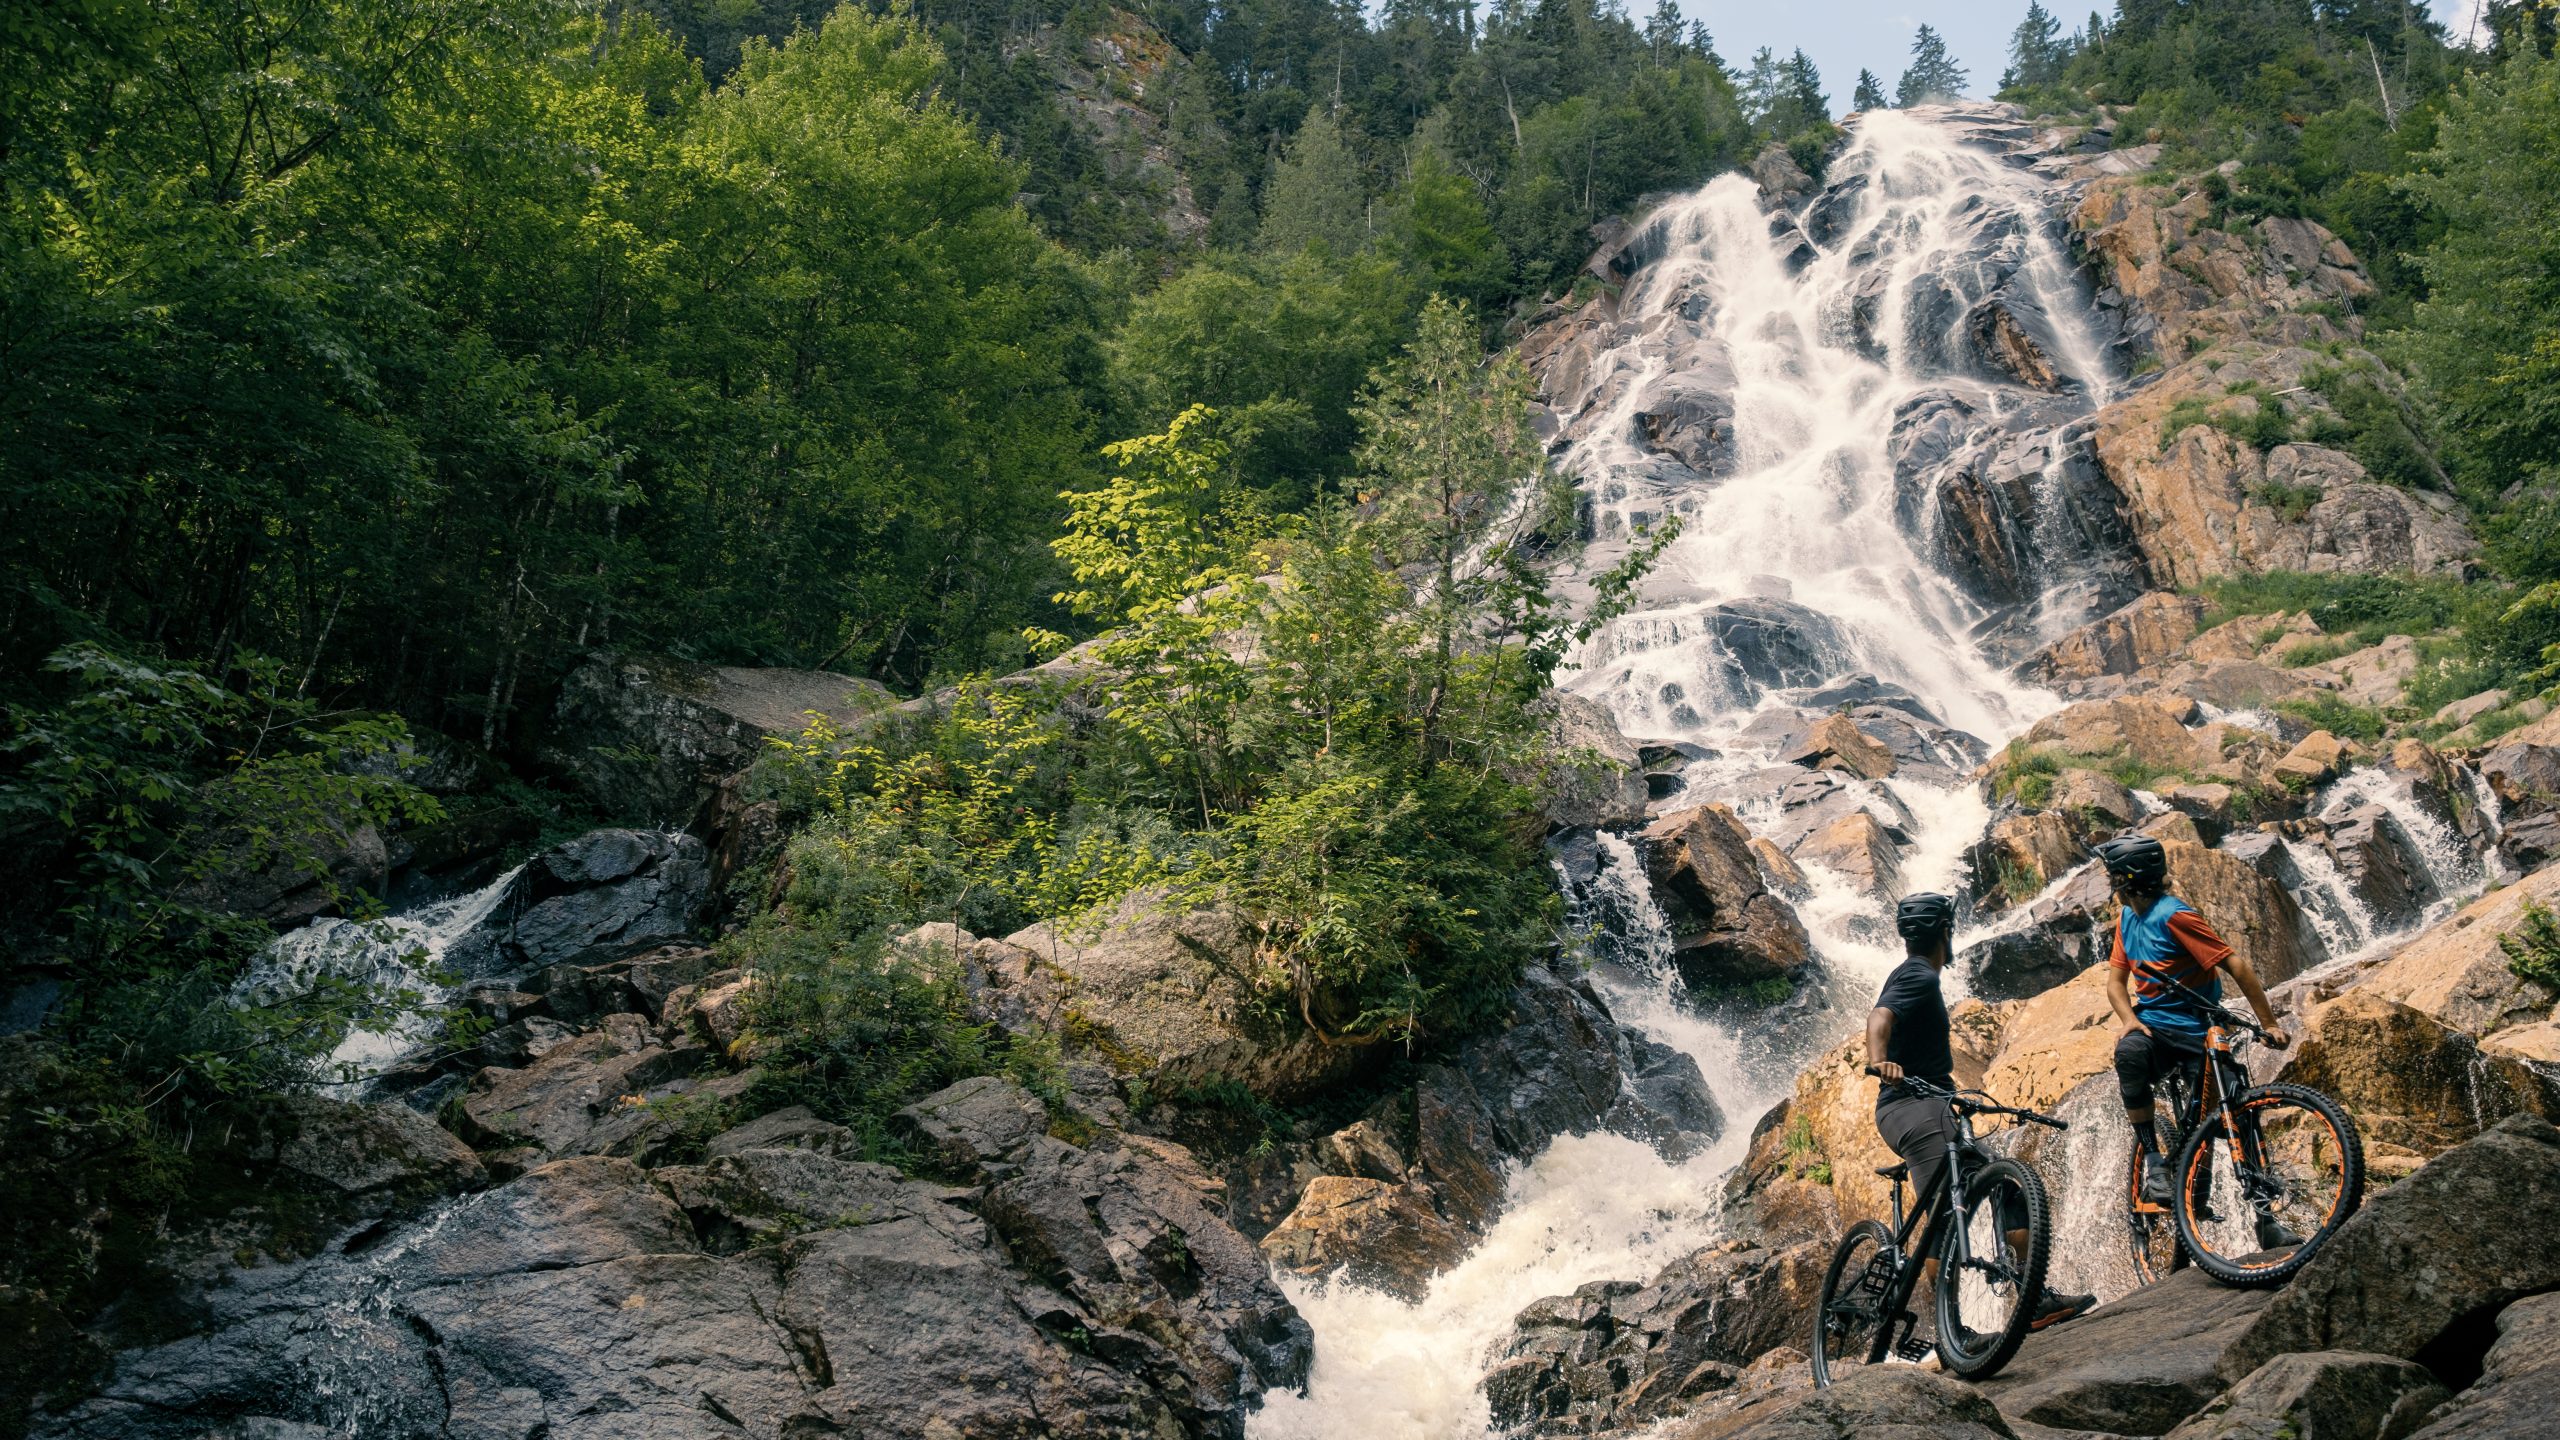 Deux cyclistes prenant une pause en plein air tout en admirant la Chute Delaney, entourée par la nature, l'un des paysages visibles lors de la pratique de sports tels que le vélo de montagne à la Vallée.